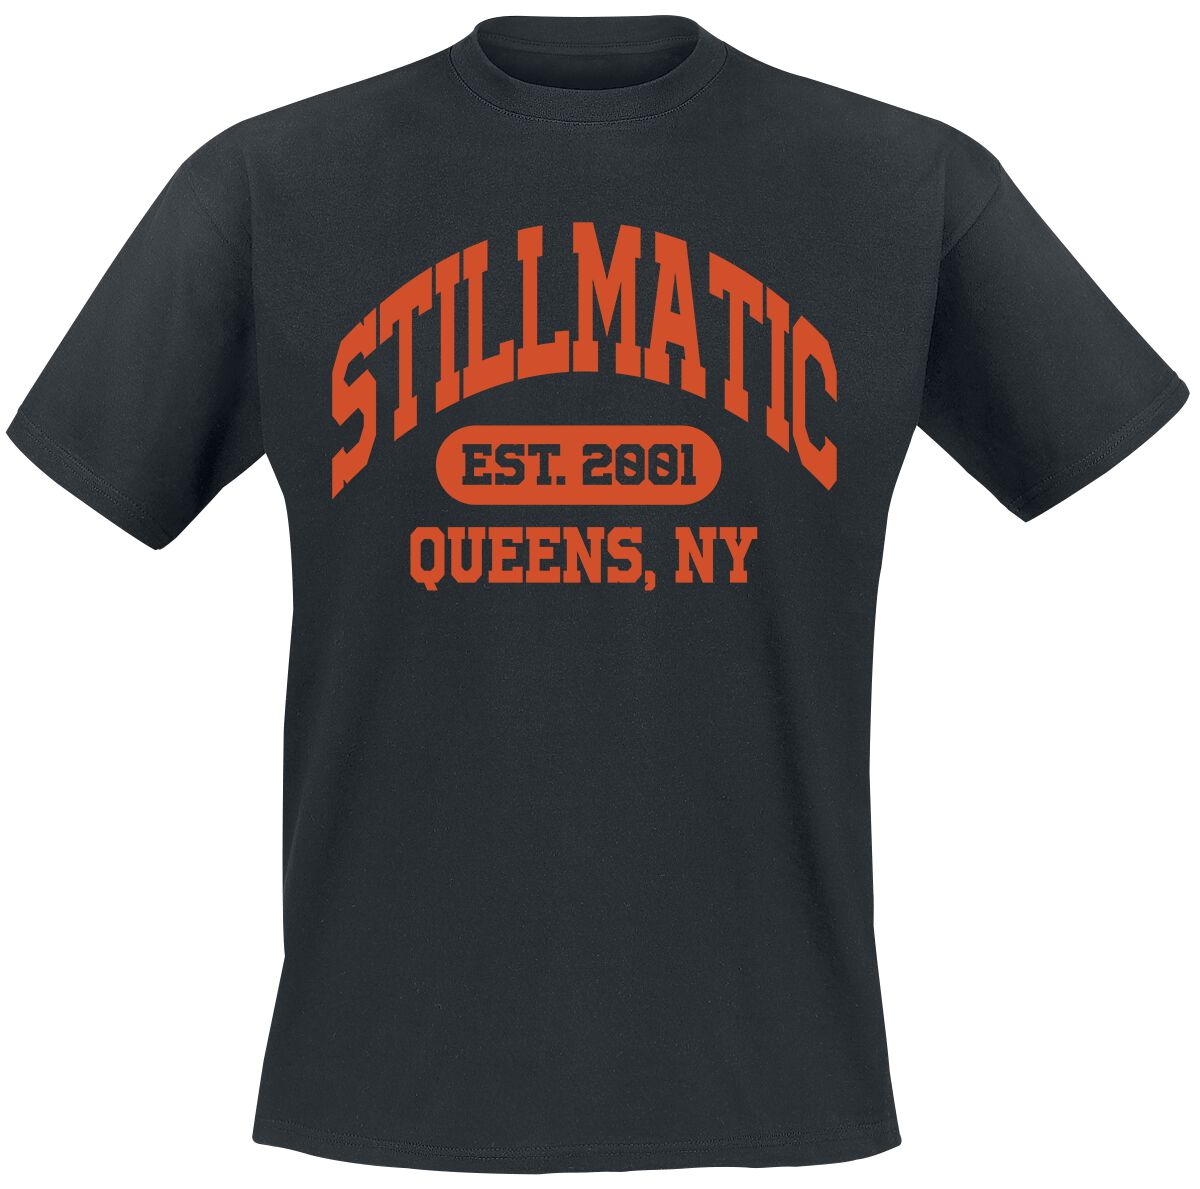 Nas - T-Shirt Stillmatic Queens